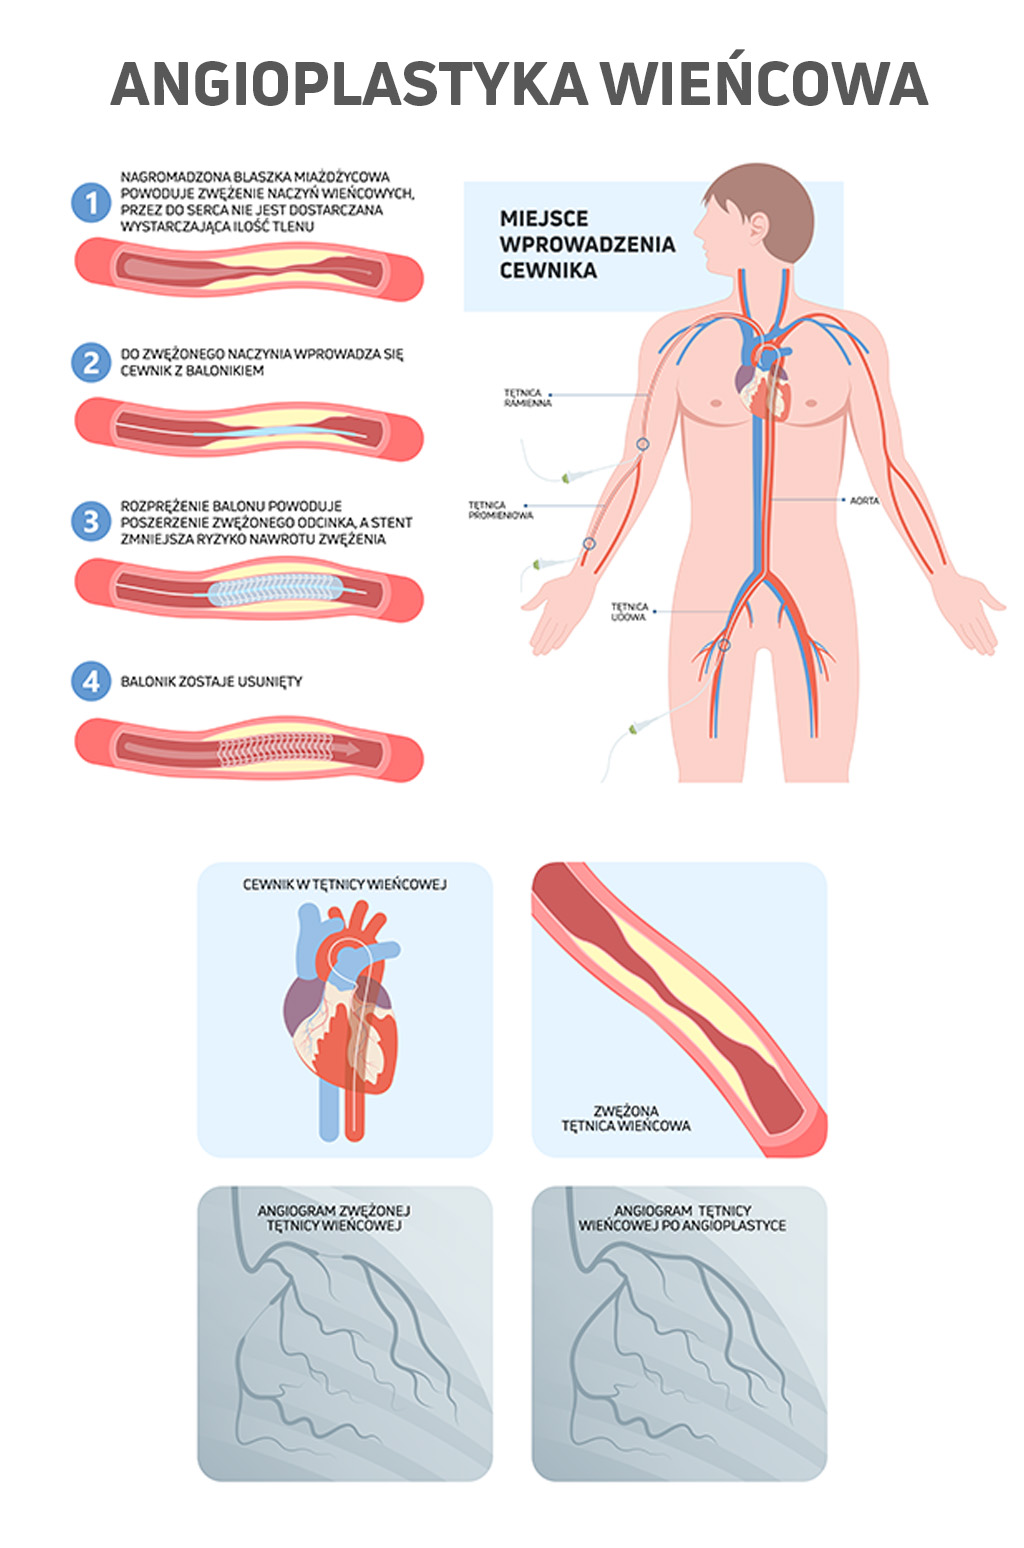 Ilustracja pokazująca na czym polega leczenie choroby niedokrwiennej serca przy pomocy angioplastyki wieńcowej